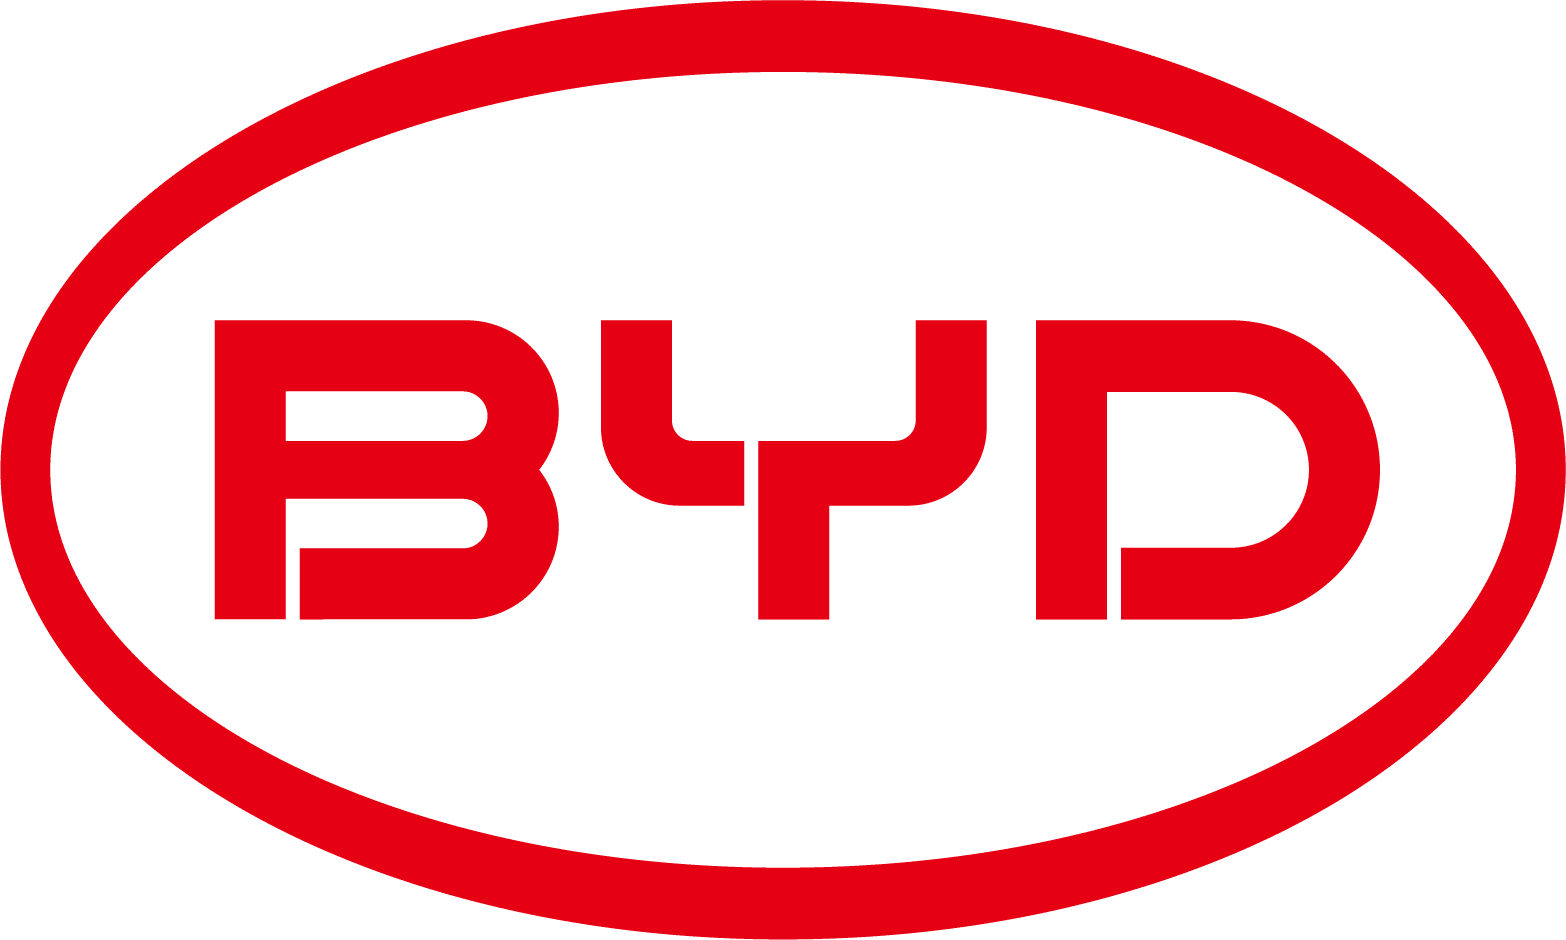 Byd Logo 1